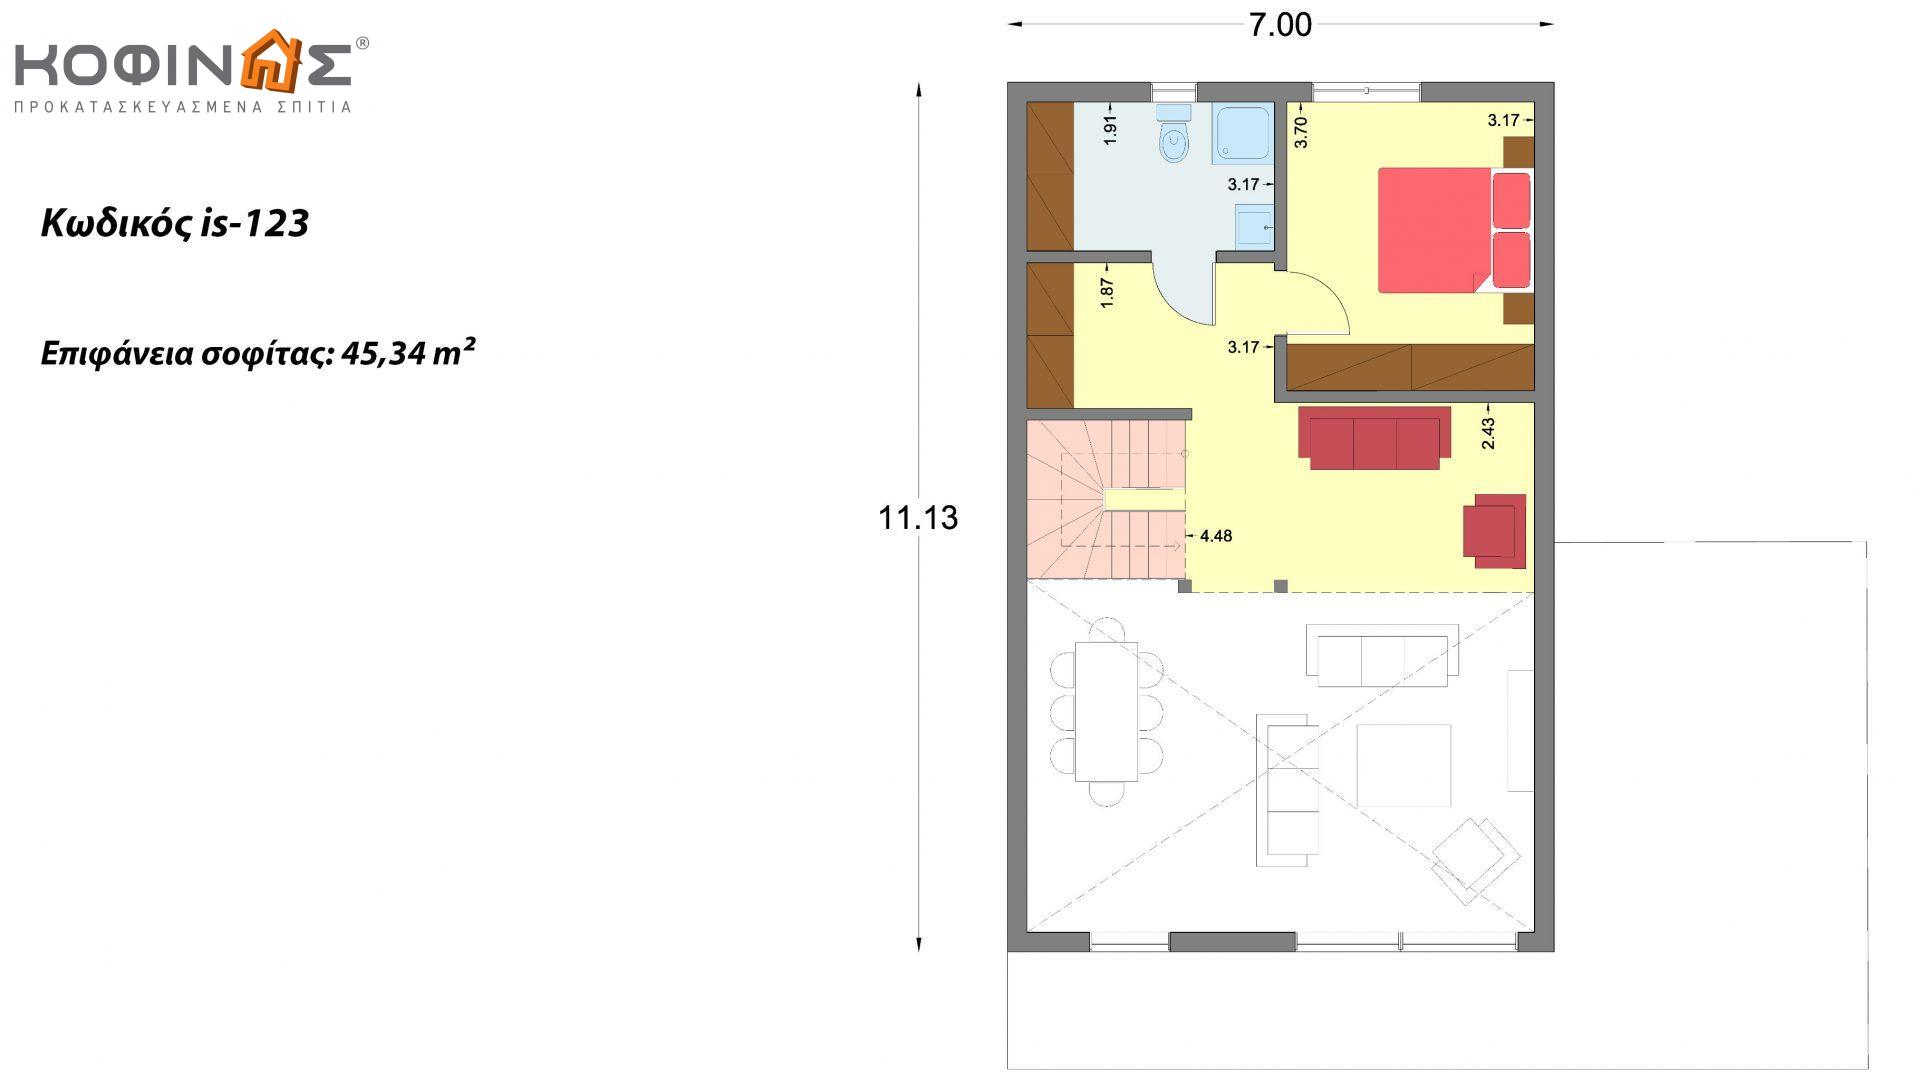 Ισόγεια Κατοικία με Σοφίτα IS-123, συνολικής επιφάνειας 123,25 τ.μ. , +Γκαράζ 27.08 m²(=150,33 m²),συνολική επιφάνεια στεγασμένων χώρων 10.50 τ.μ.